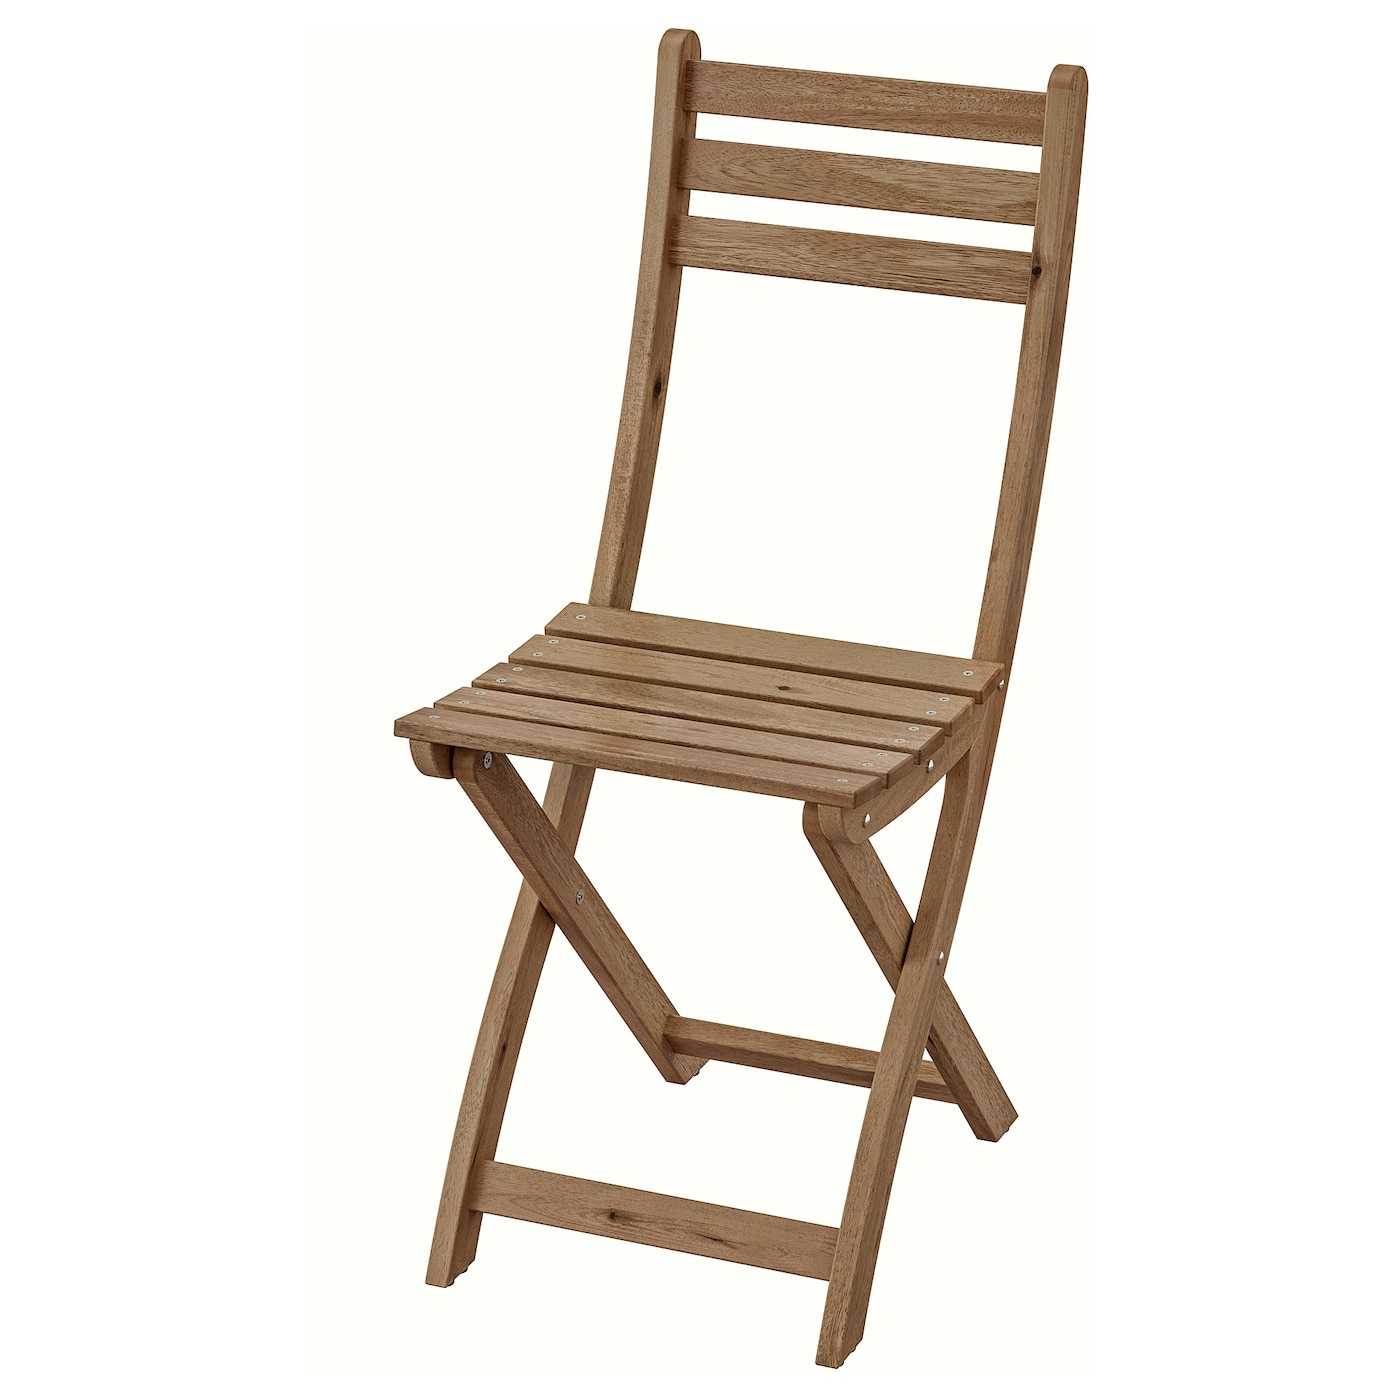 Определившись с размерами стула со спинкой, можно легко сделать удобную деревянную мебель